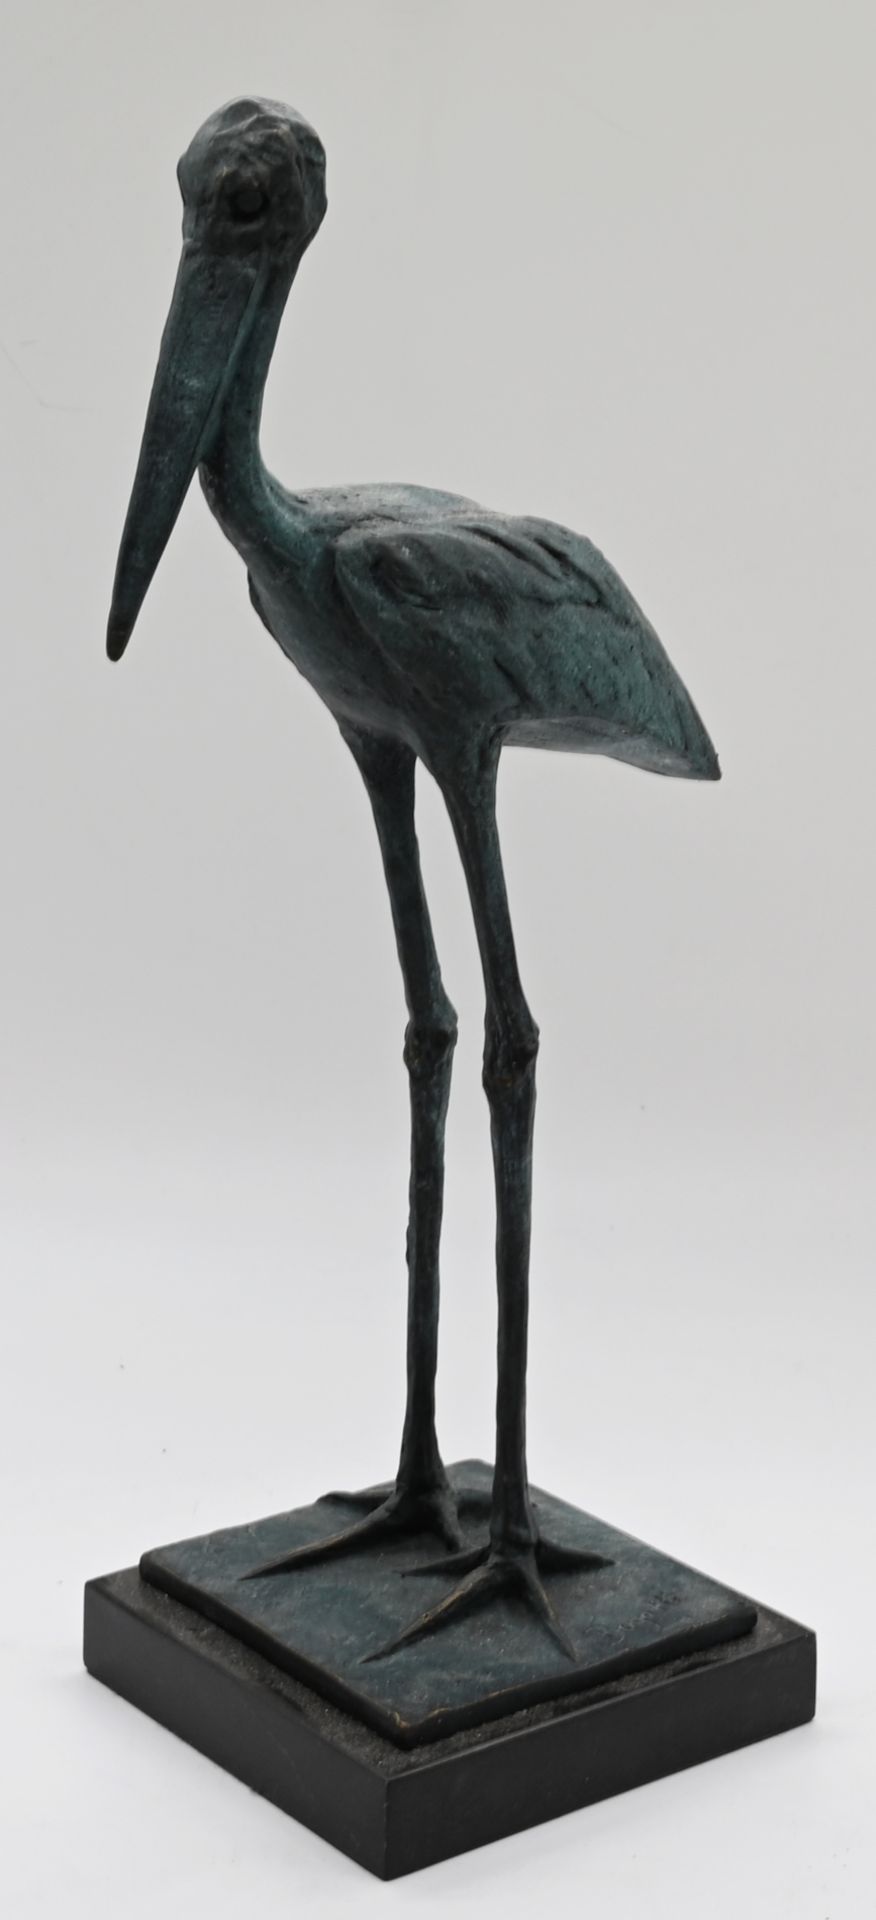 1 Figur Bronze grün patiniert "Storchenvogel Jabiru" Replik nach Rembrandt Bugatti, H ca. 33cm,